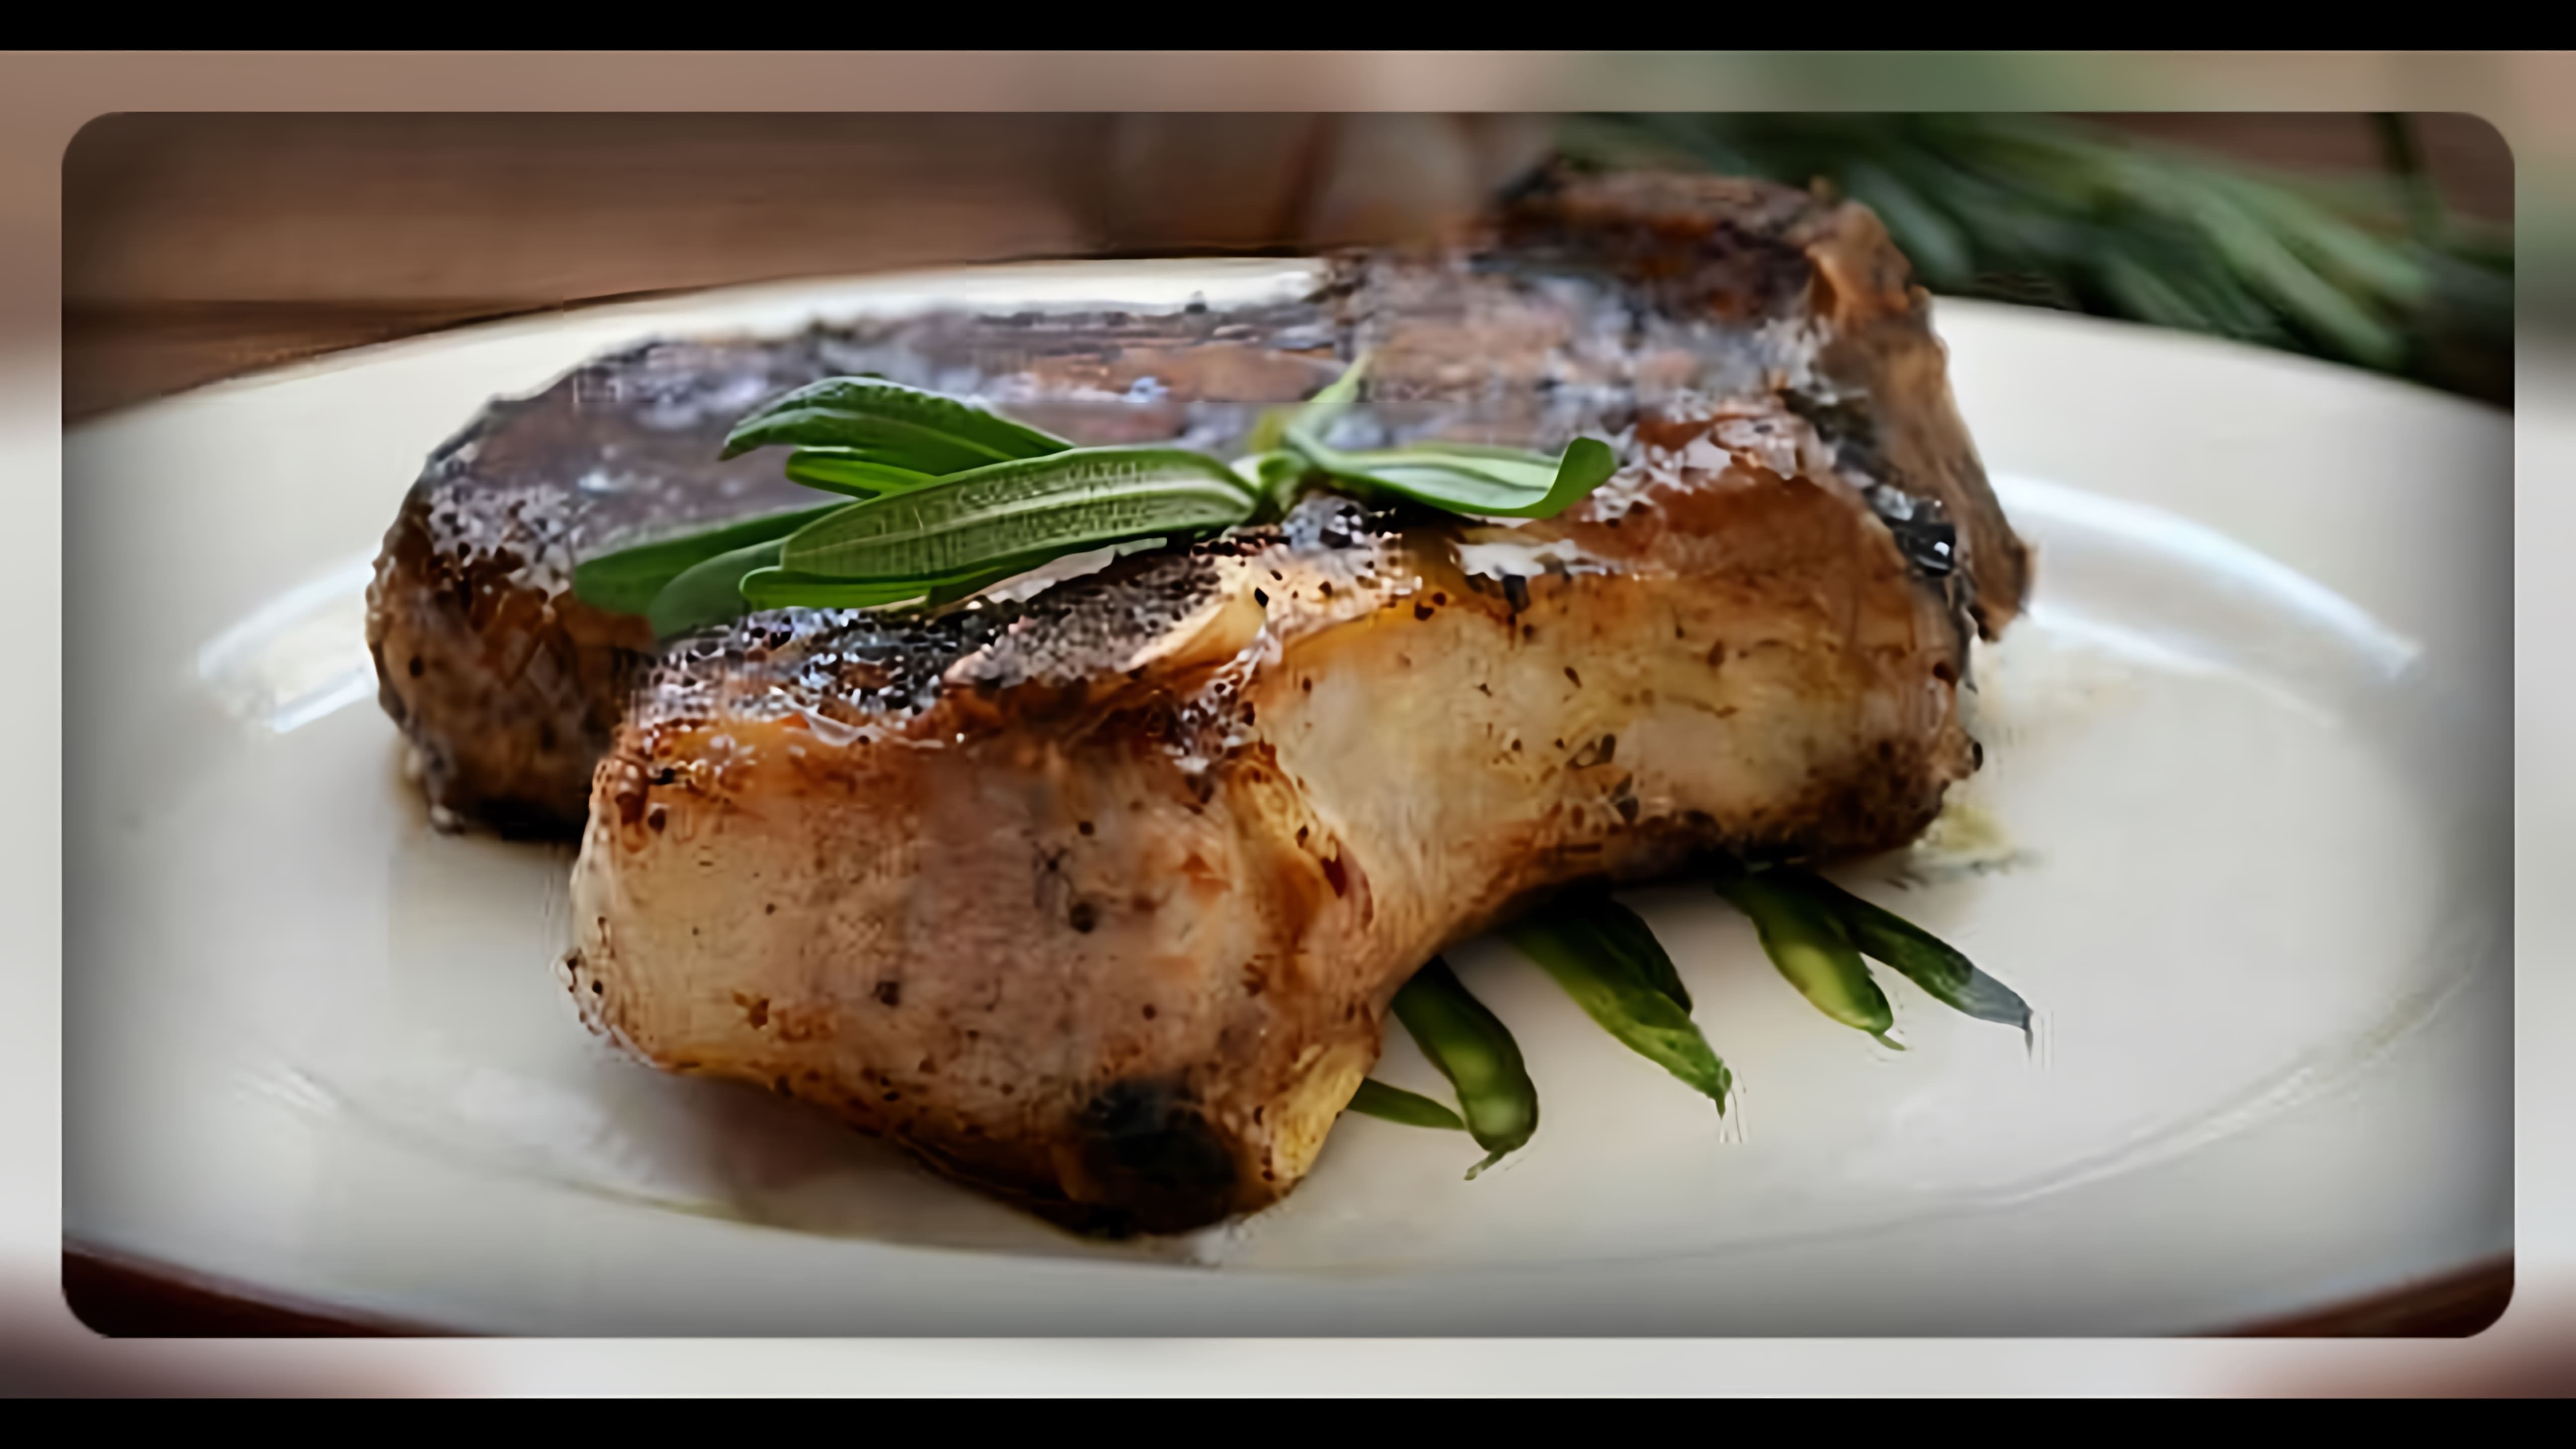 Видео-ролик с заголовком "Отбивная на кости" может быть о том, как приготовить вкусное и сочное блюдо из мяса